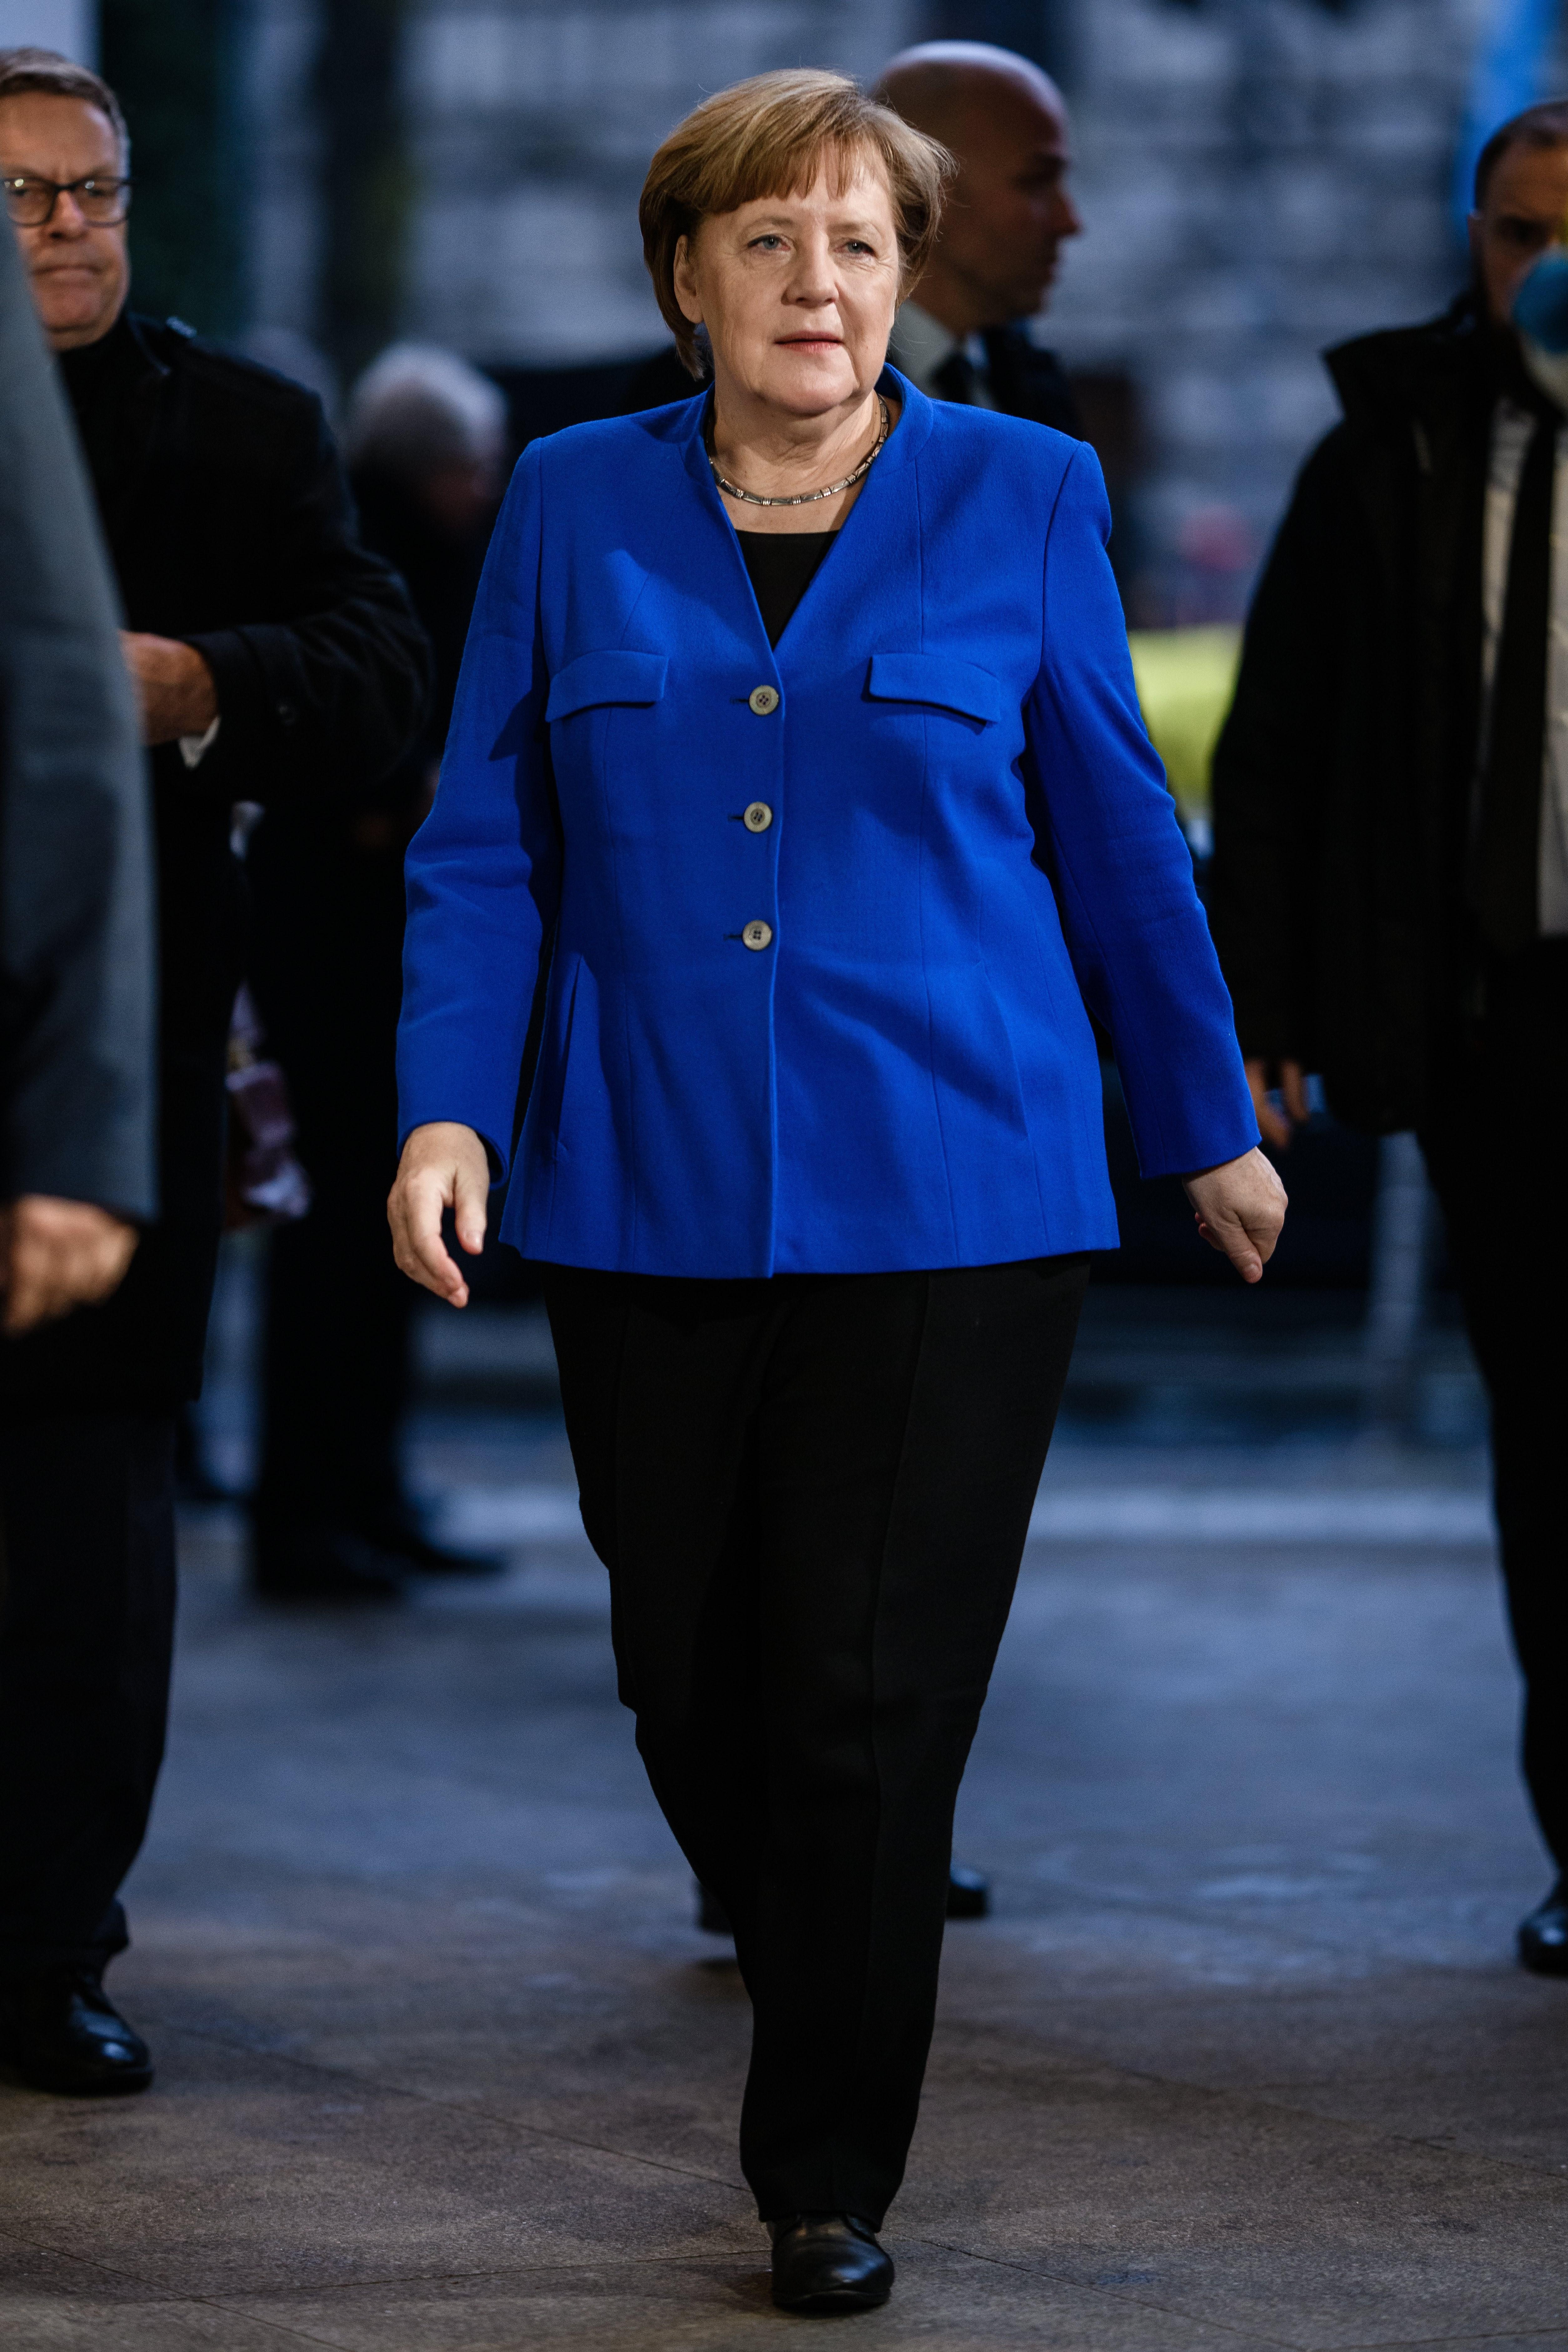 Merkel no se presentará a la reelección como presidenta de la CDU